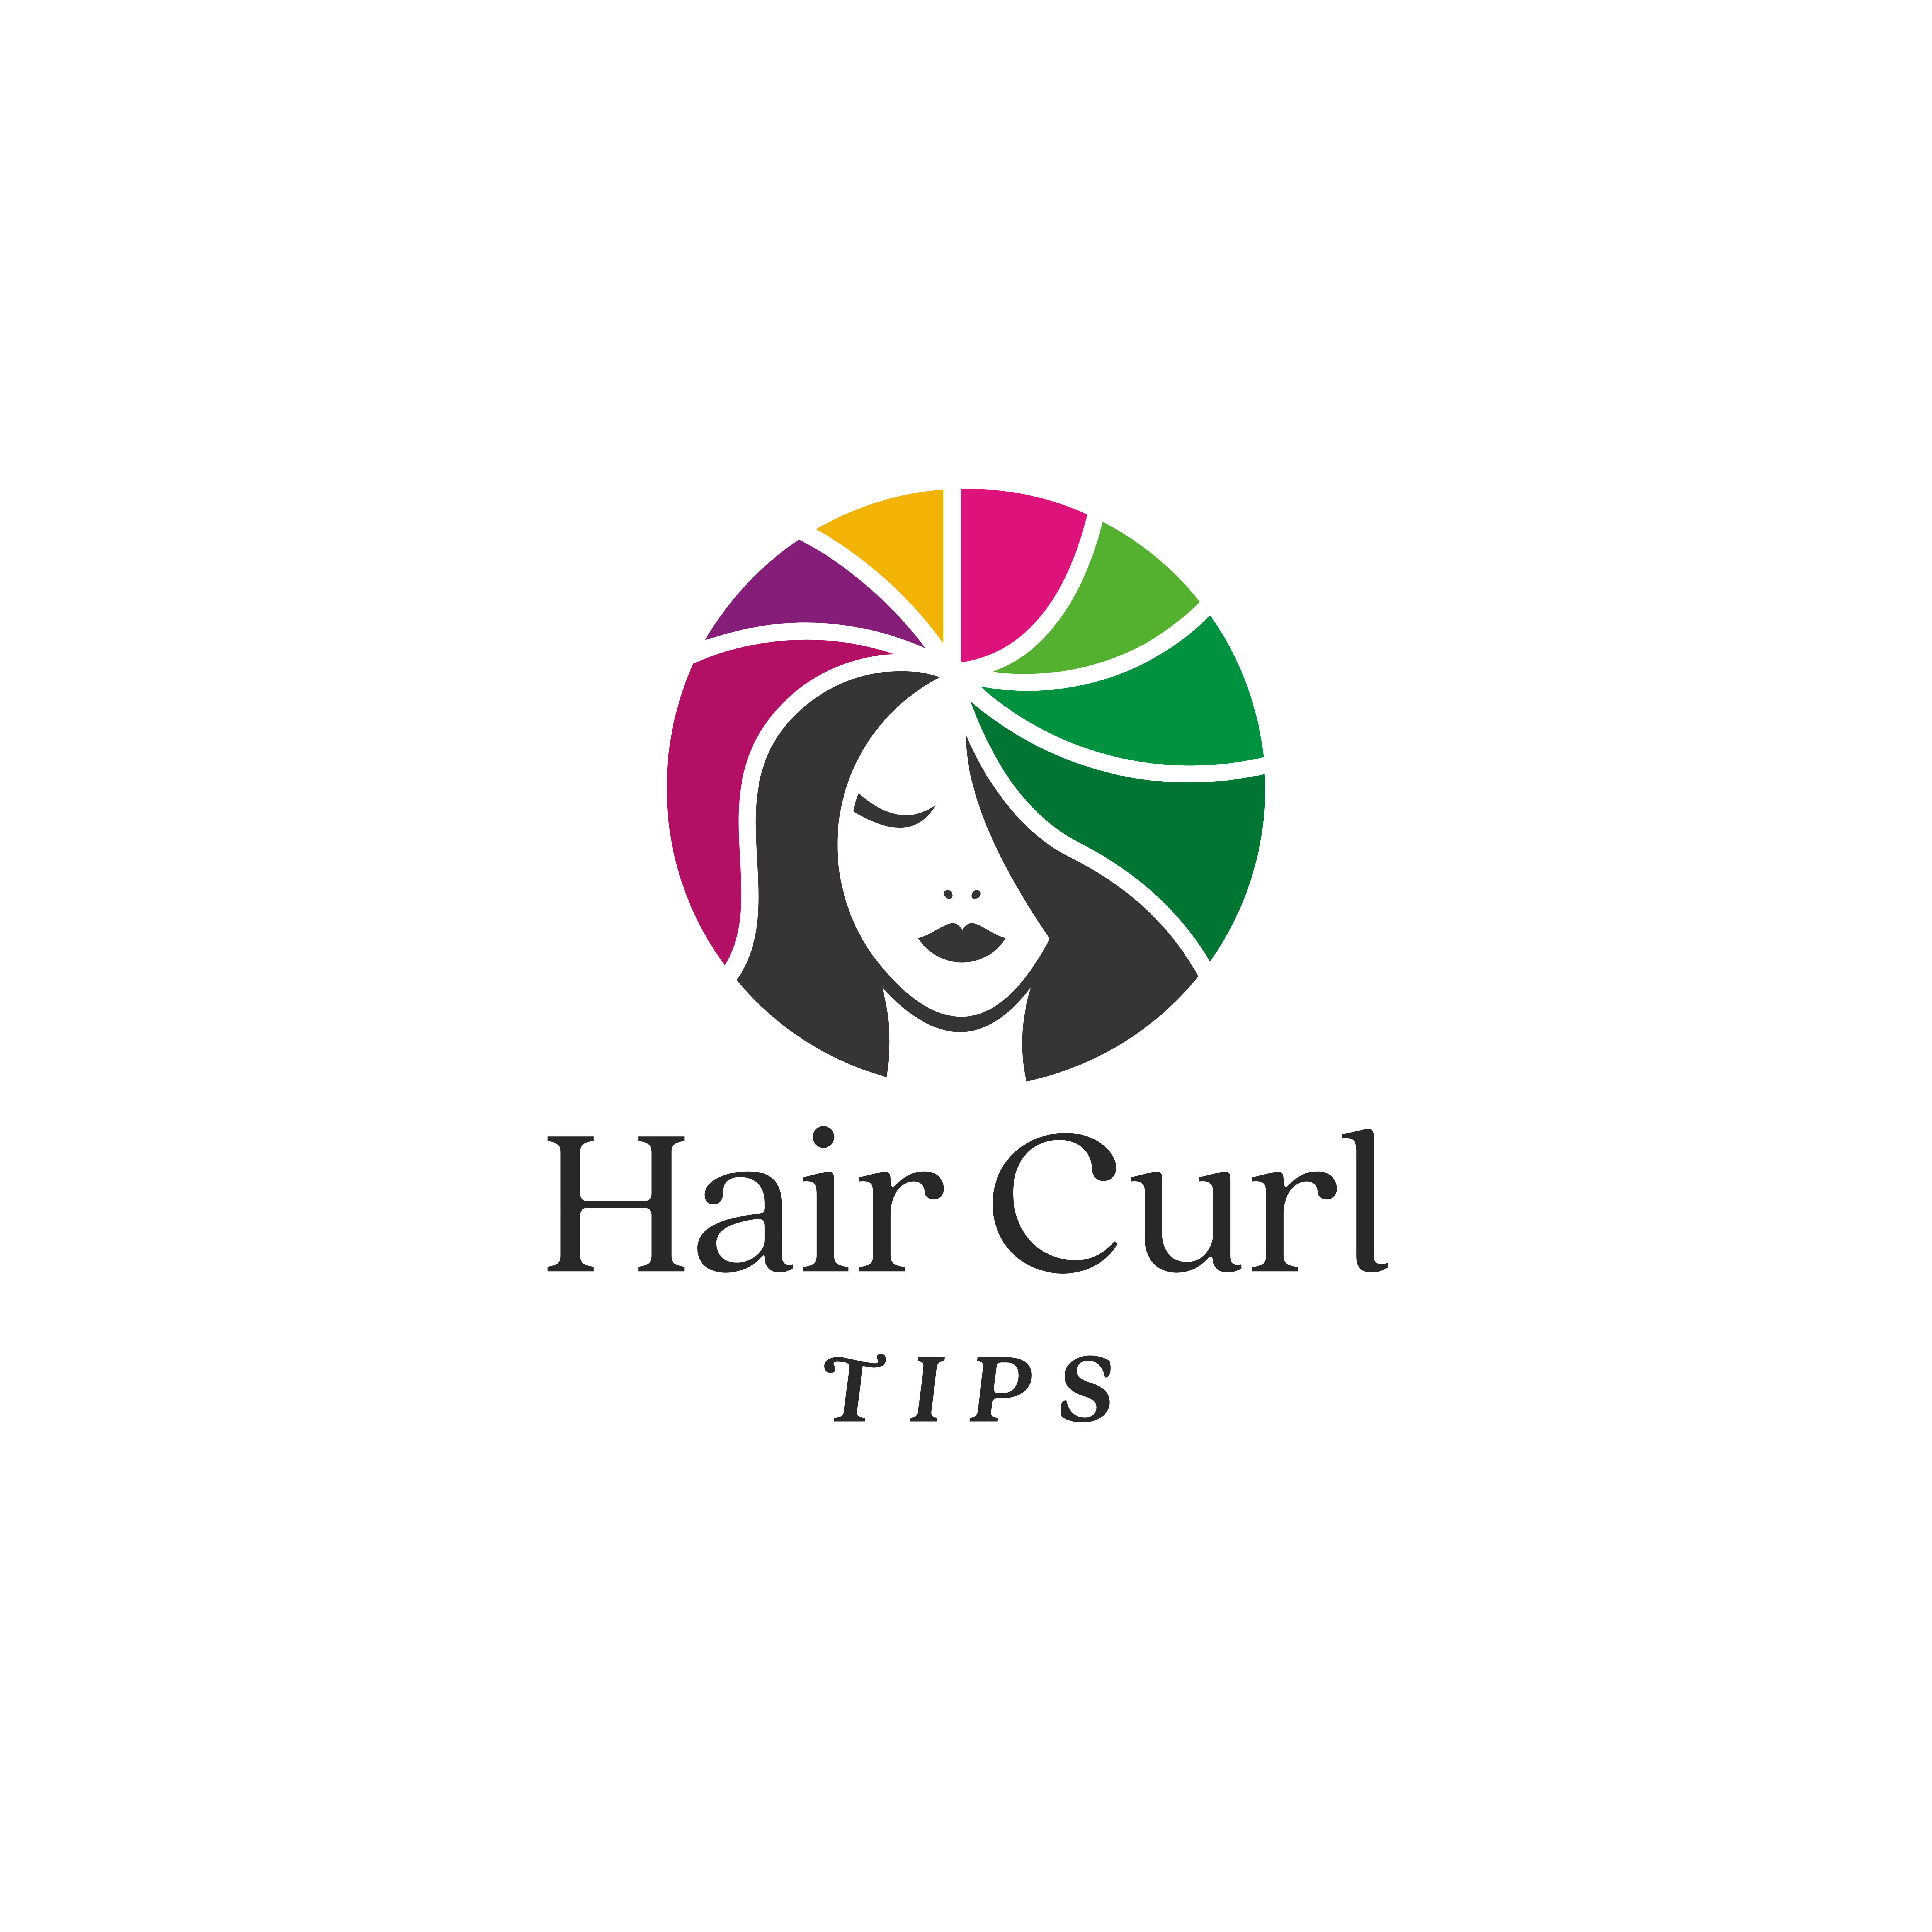 Hair Curl Tips